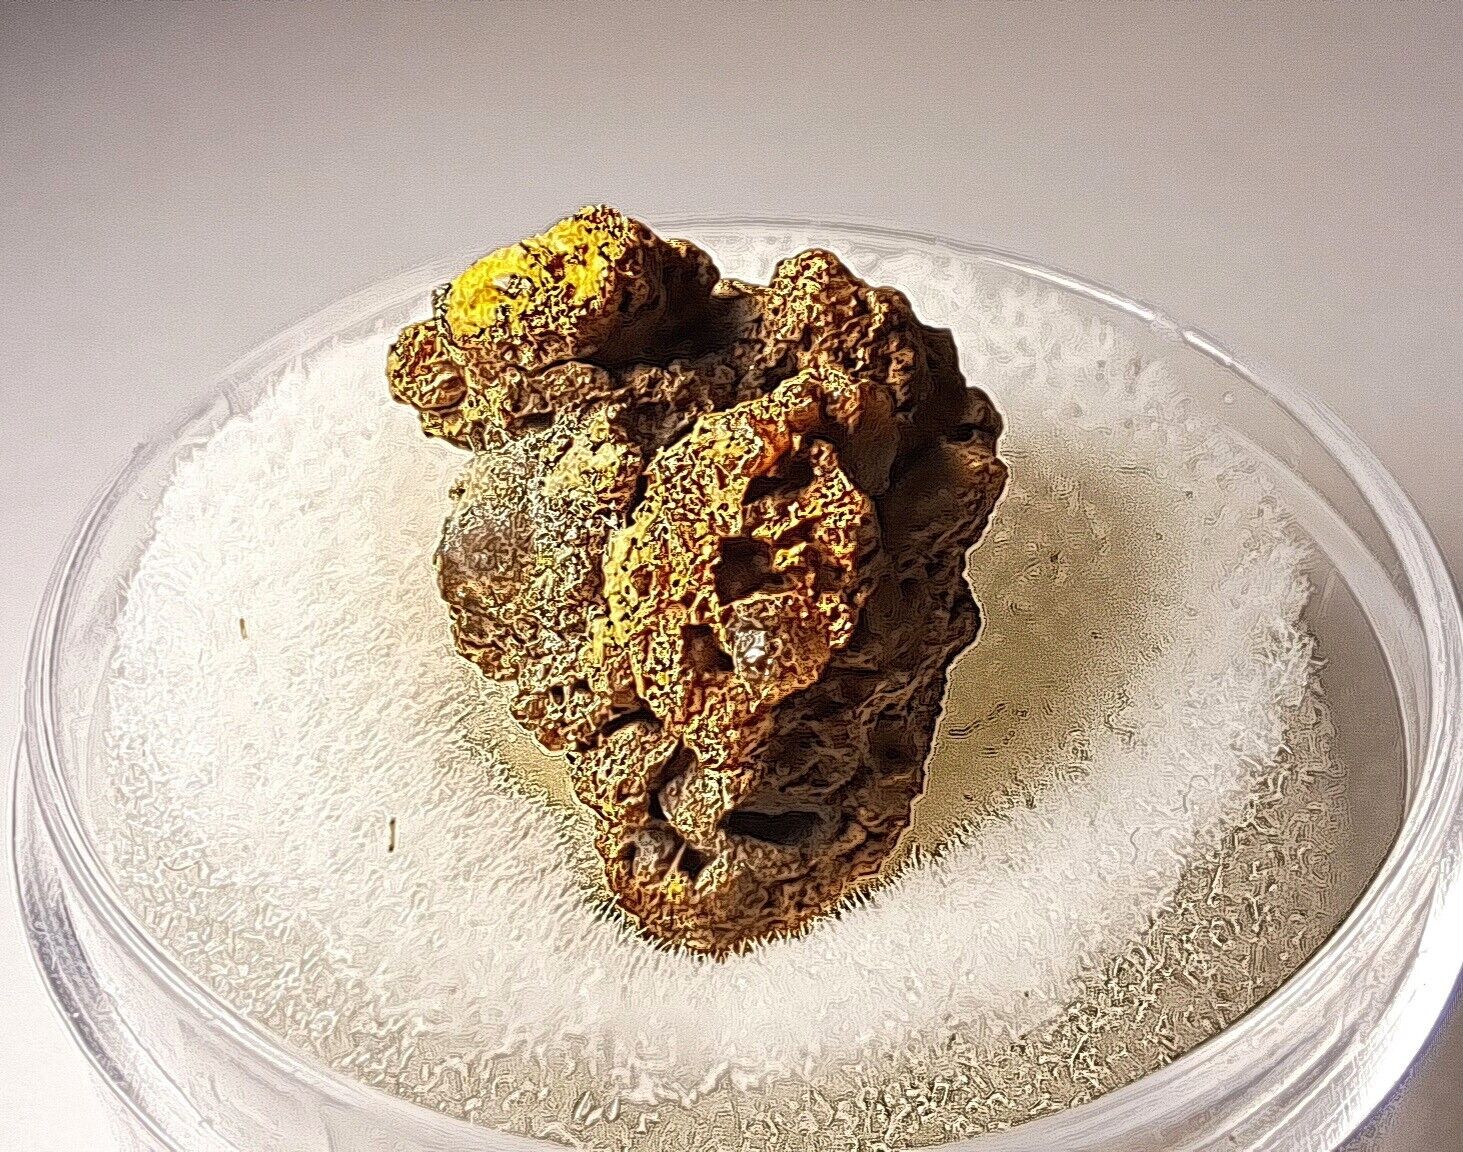 Dalgaranga Mesosiderite Meteorite. Australia. 1.9g Rare